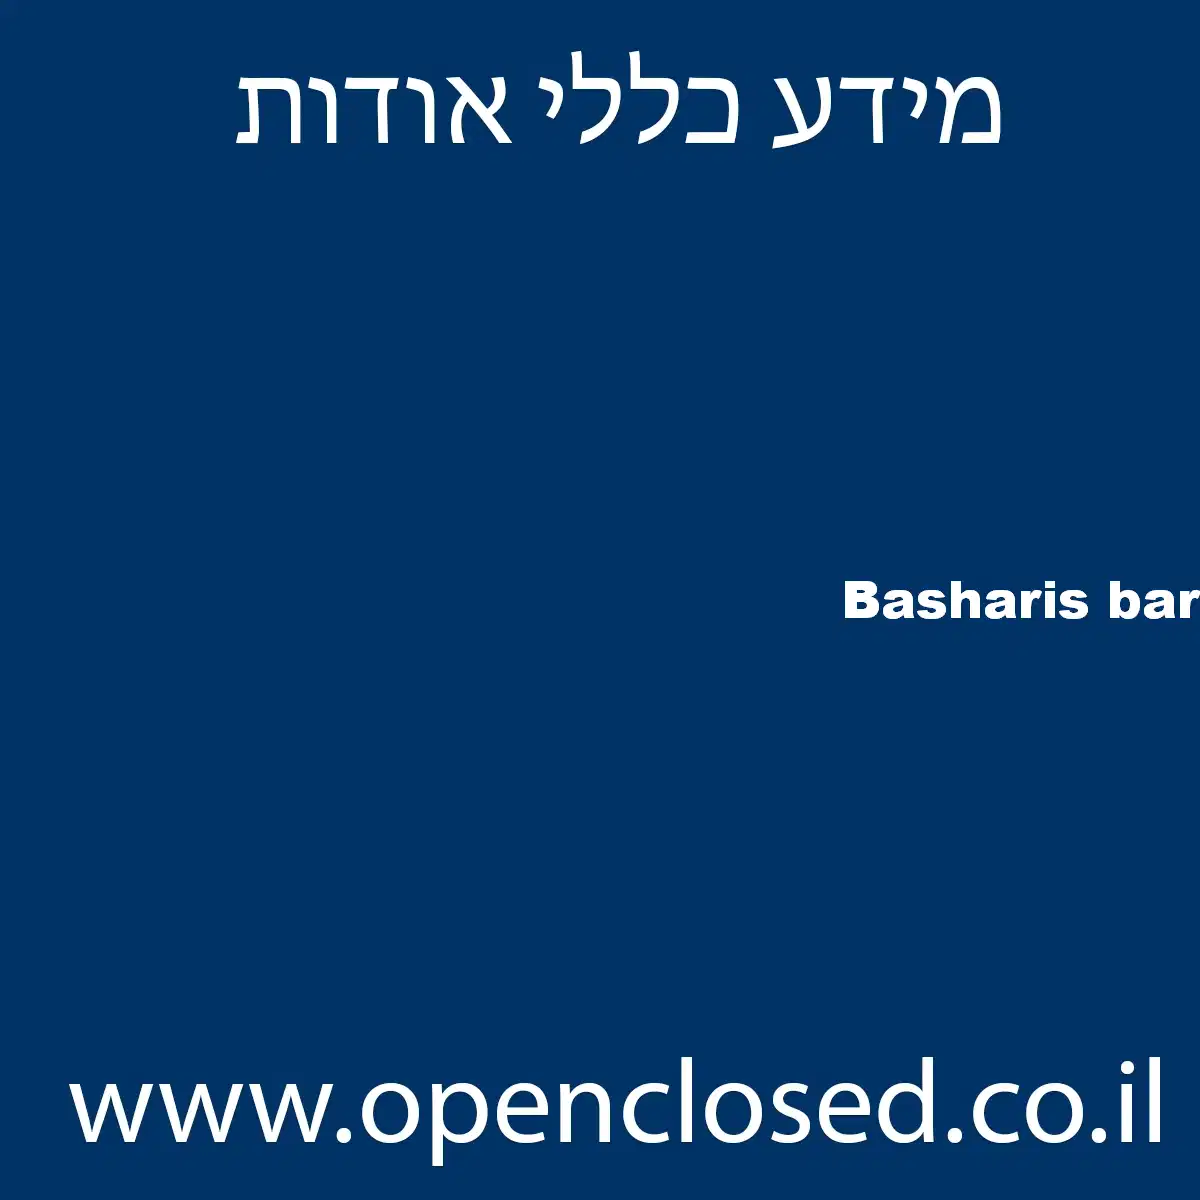 Basharis bar